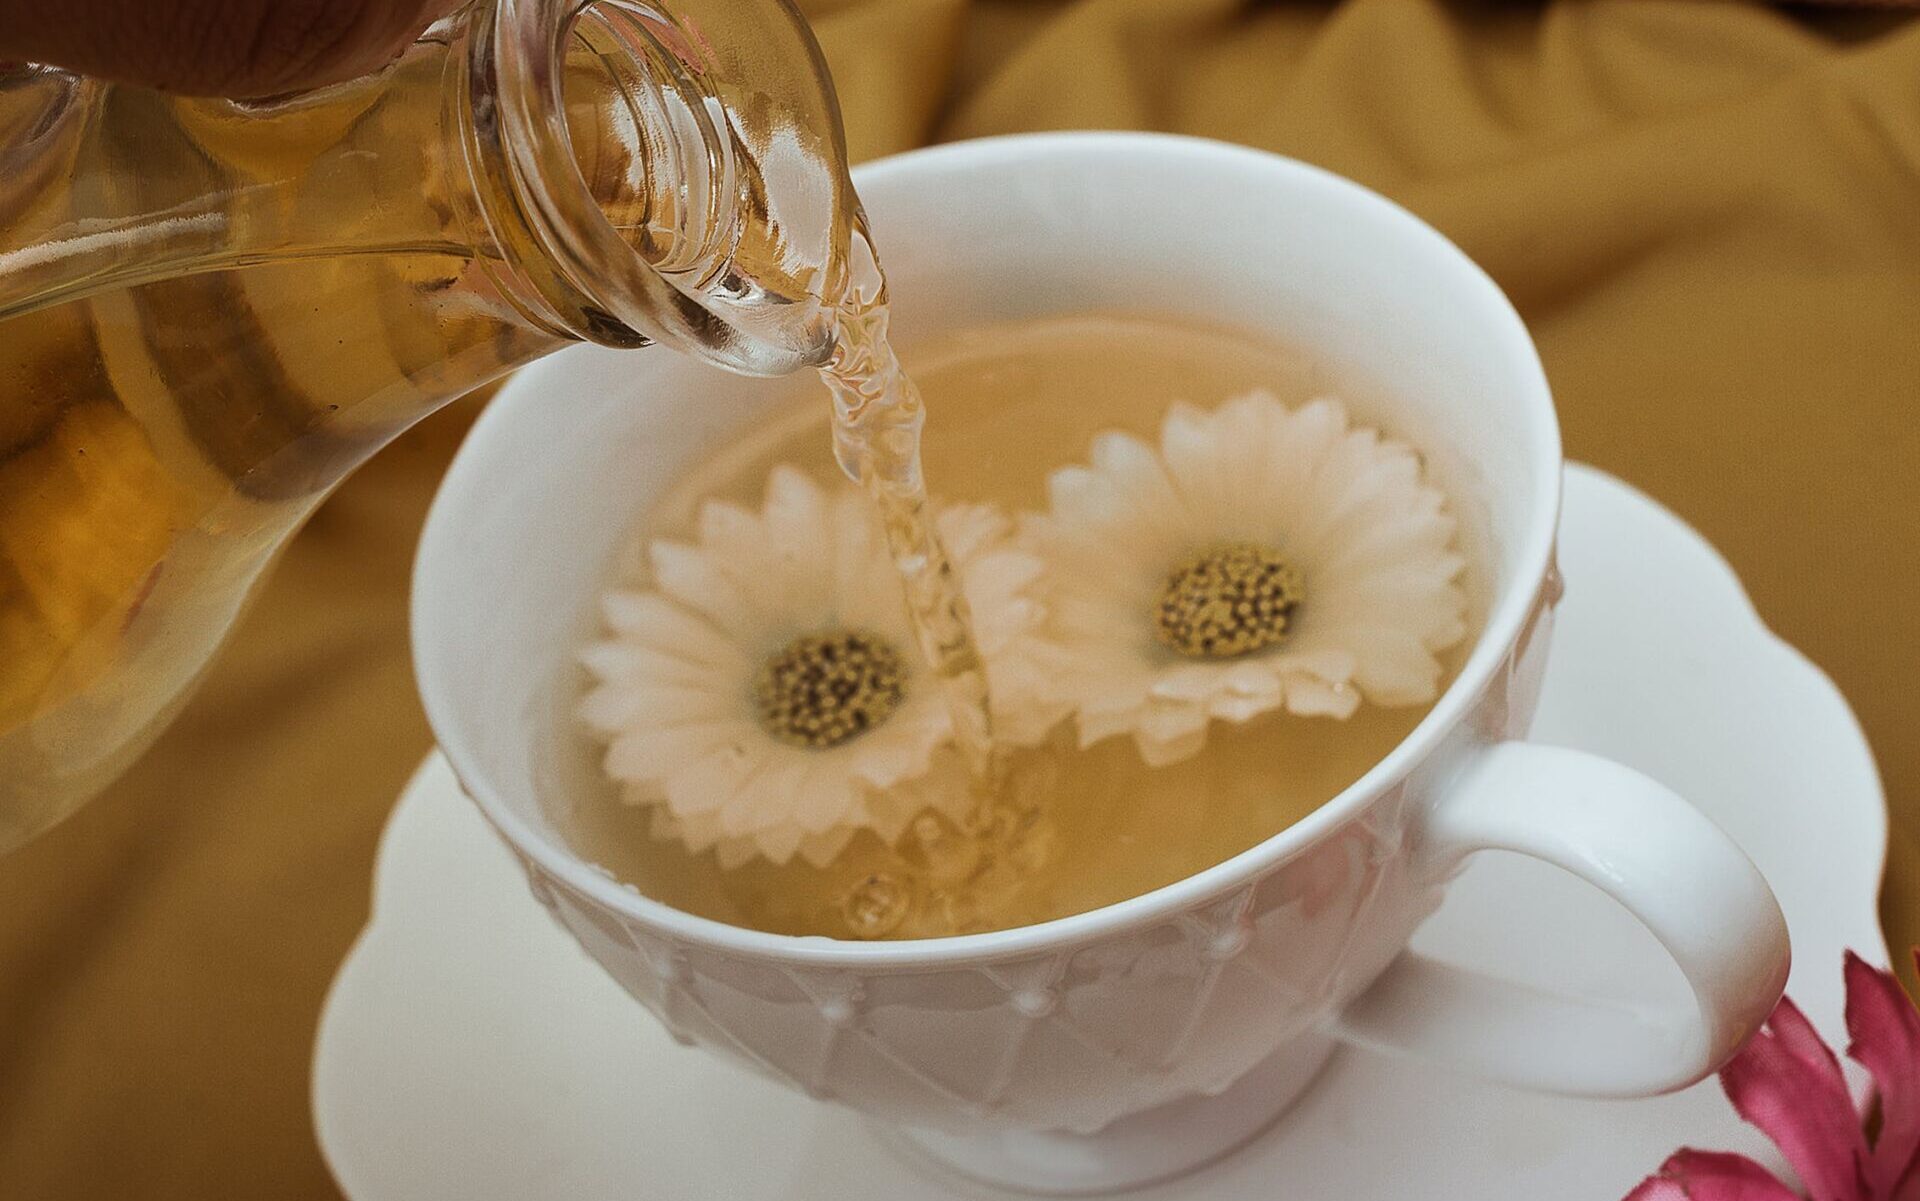 Biała herbata - sposób na piękną skórę. Jak wykorzystać ją w pielęgnacji? /fot. pexels